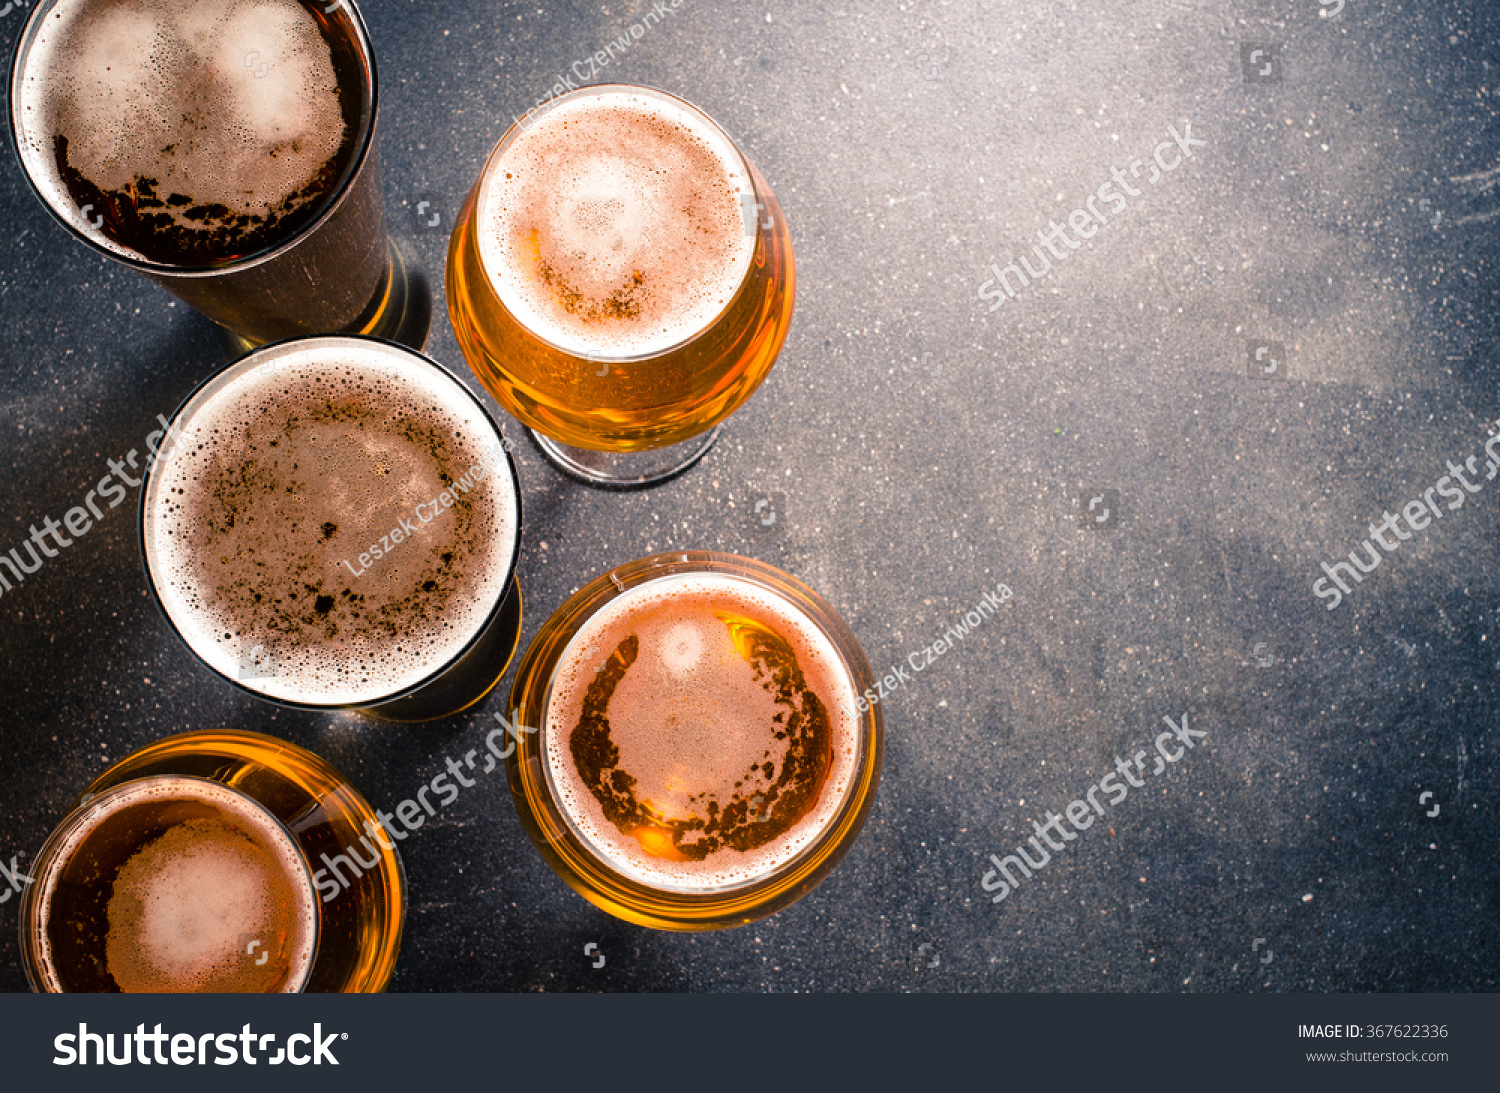 Beer glasses on dark table #367622336